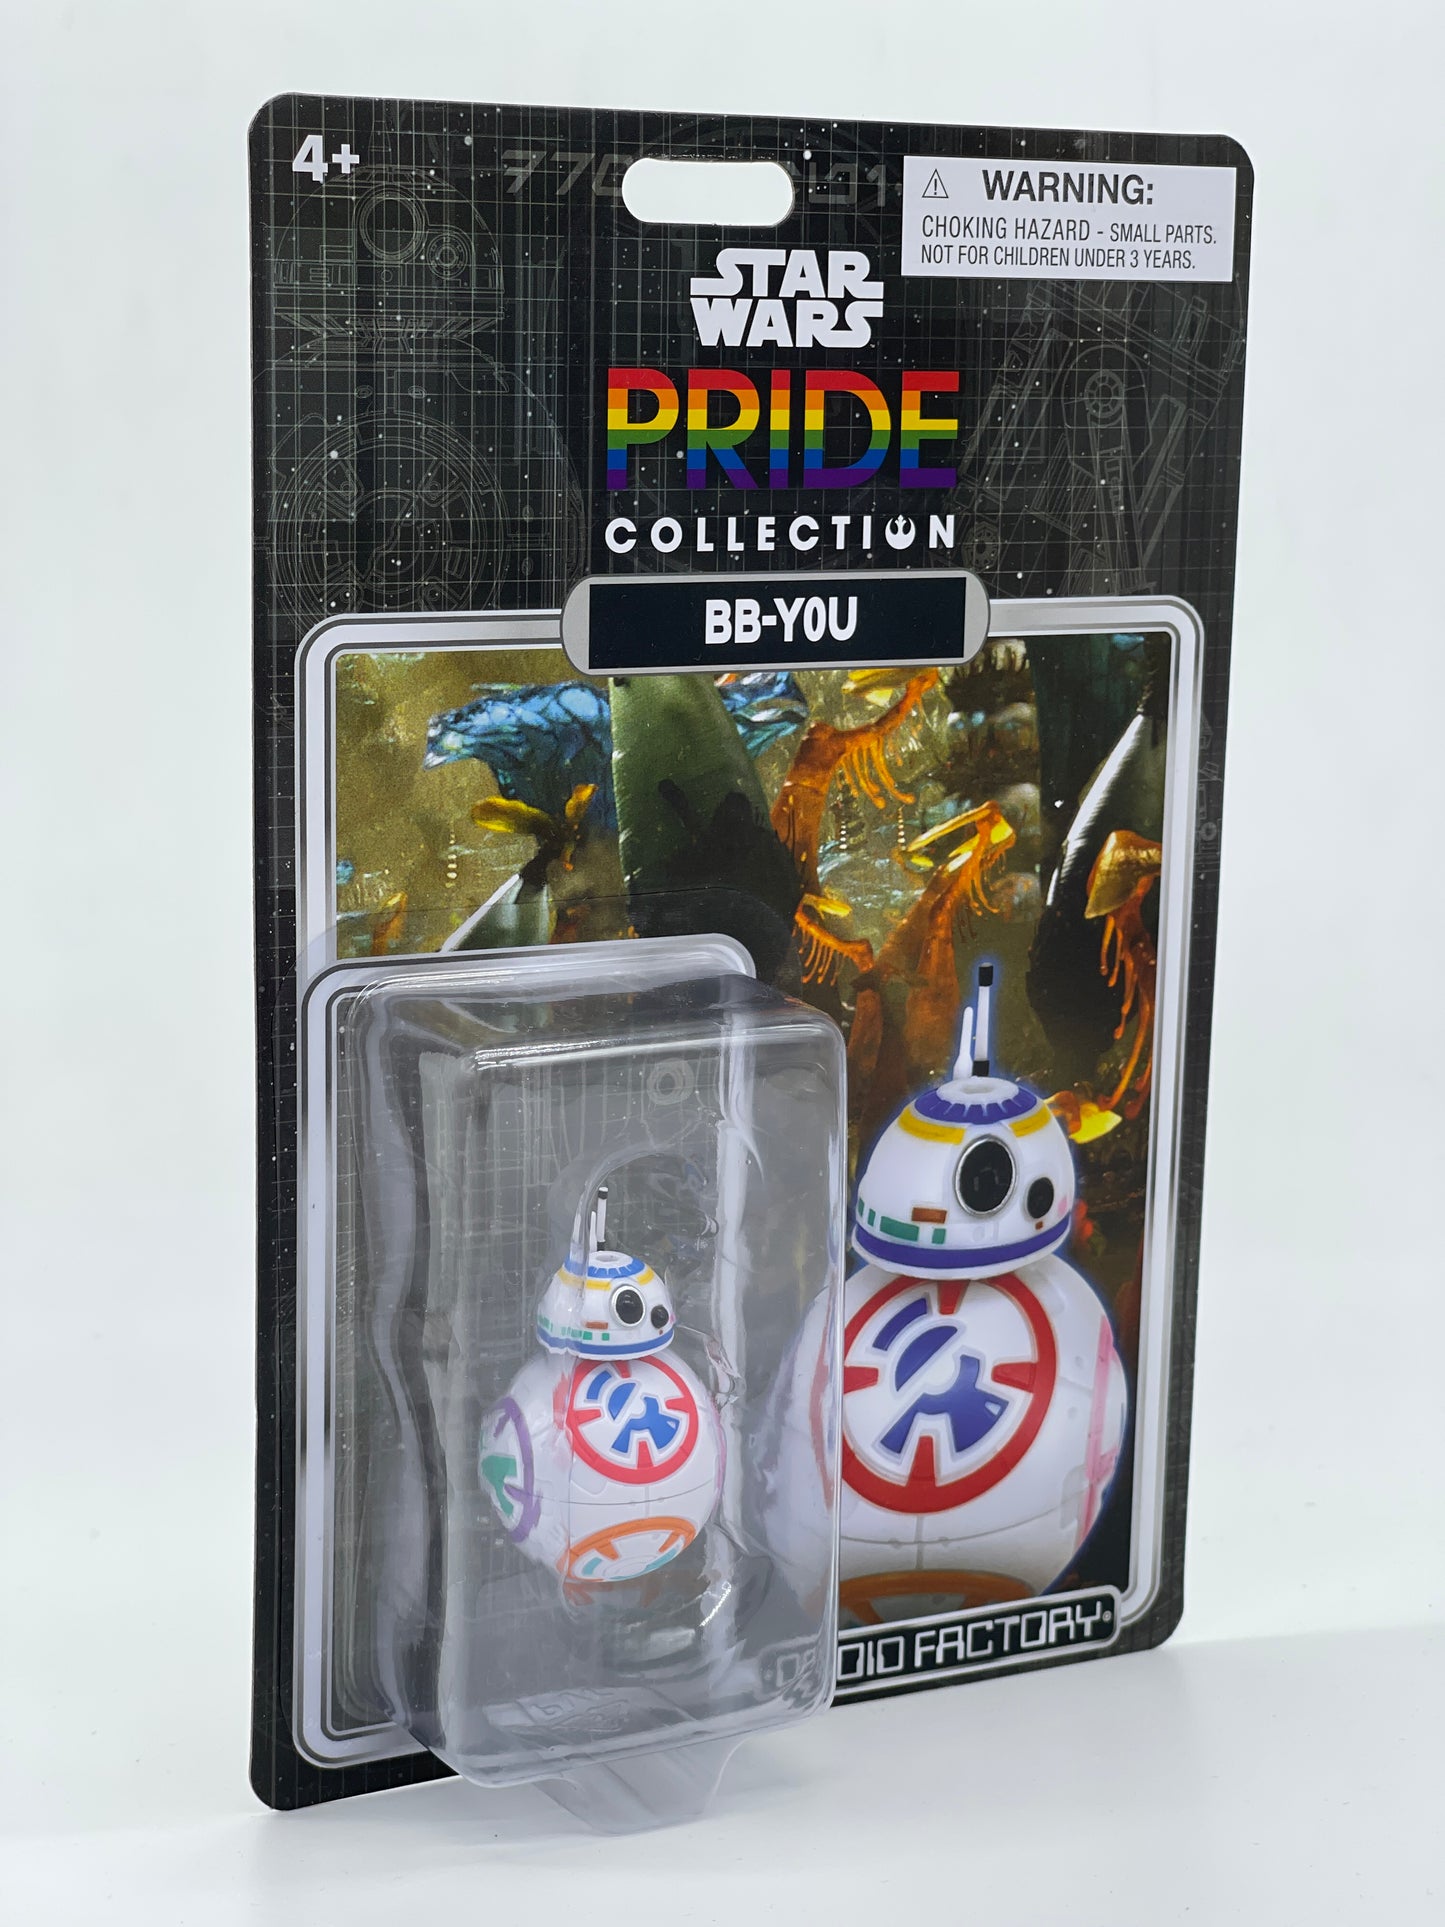 Star Wars "BB-Y0U" Pride Collection Disneyworld Exclusive Droid Factory